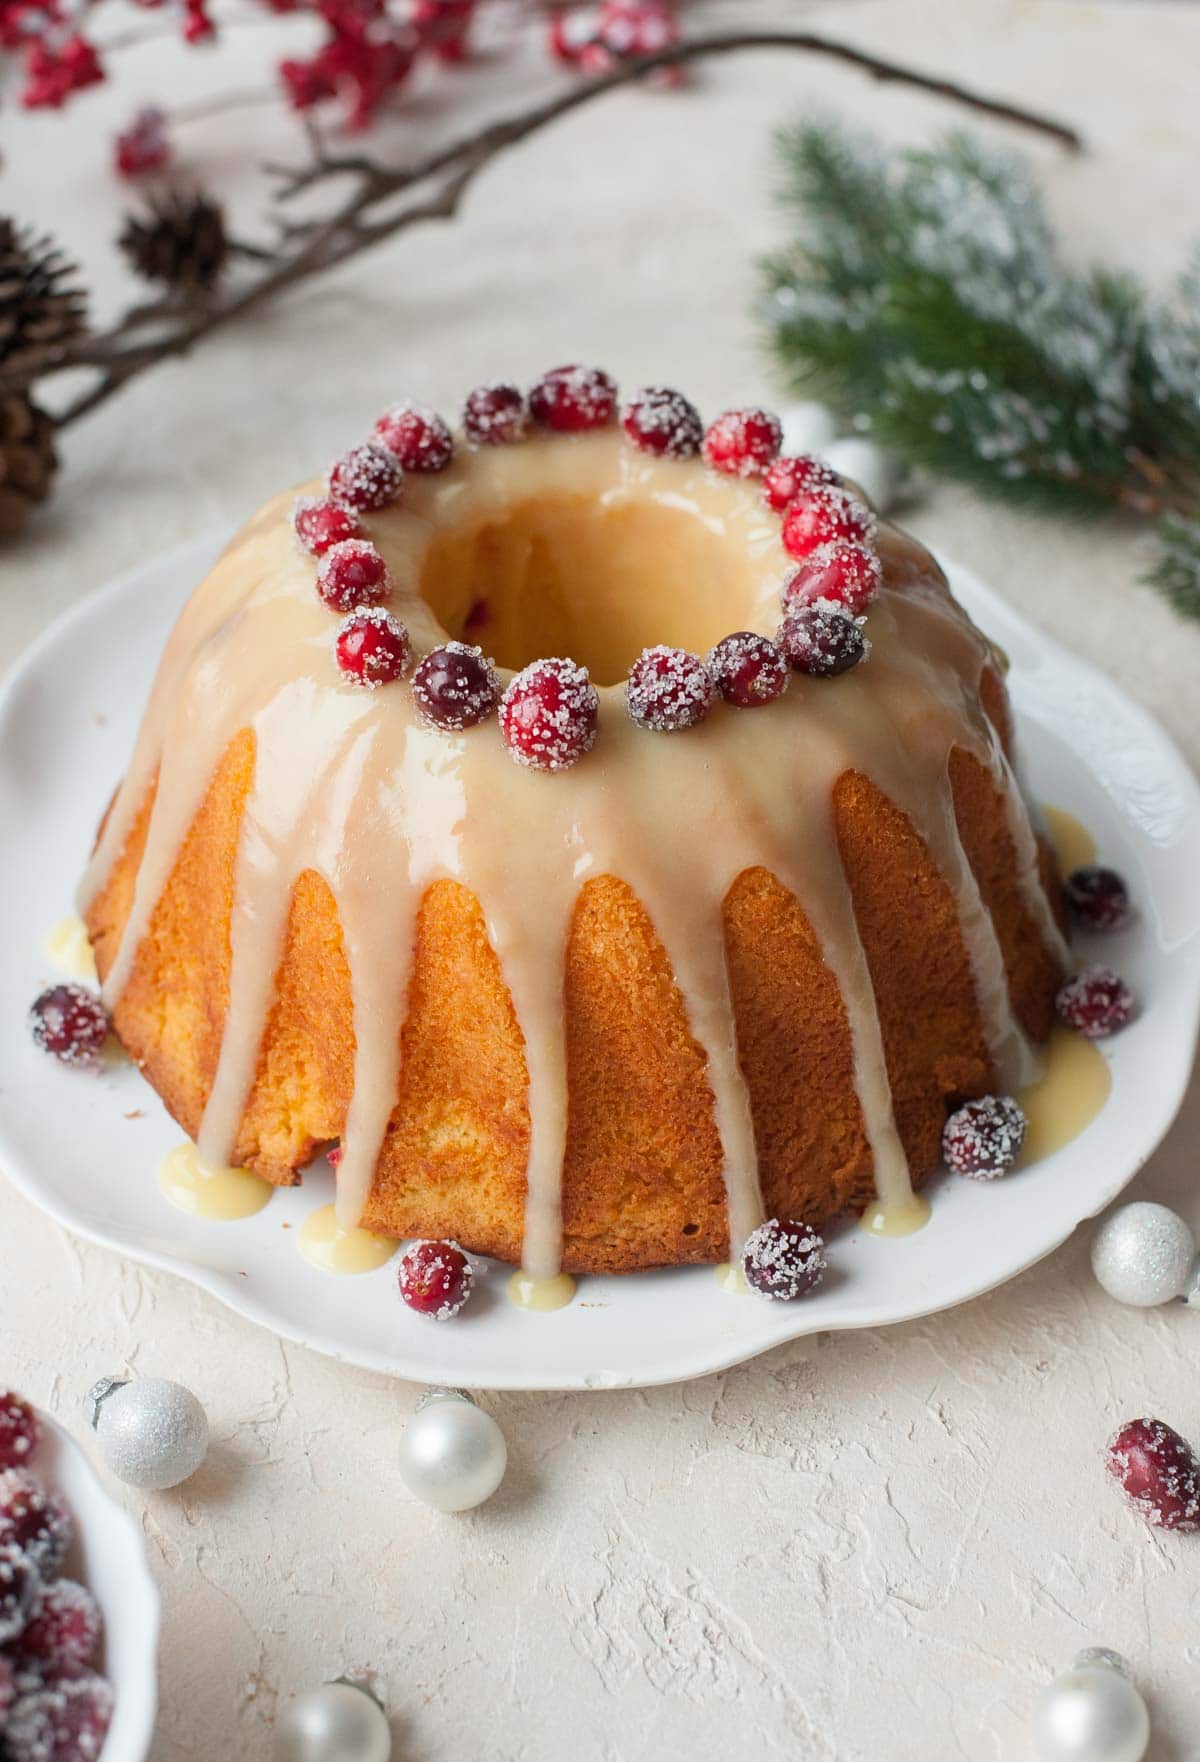 Top 10 Christmas Cake Recipes To Make